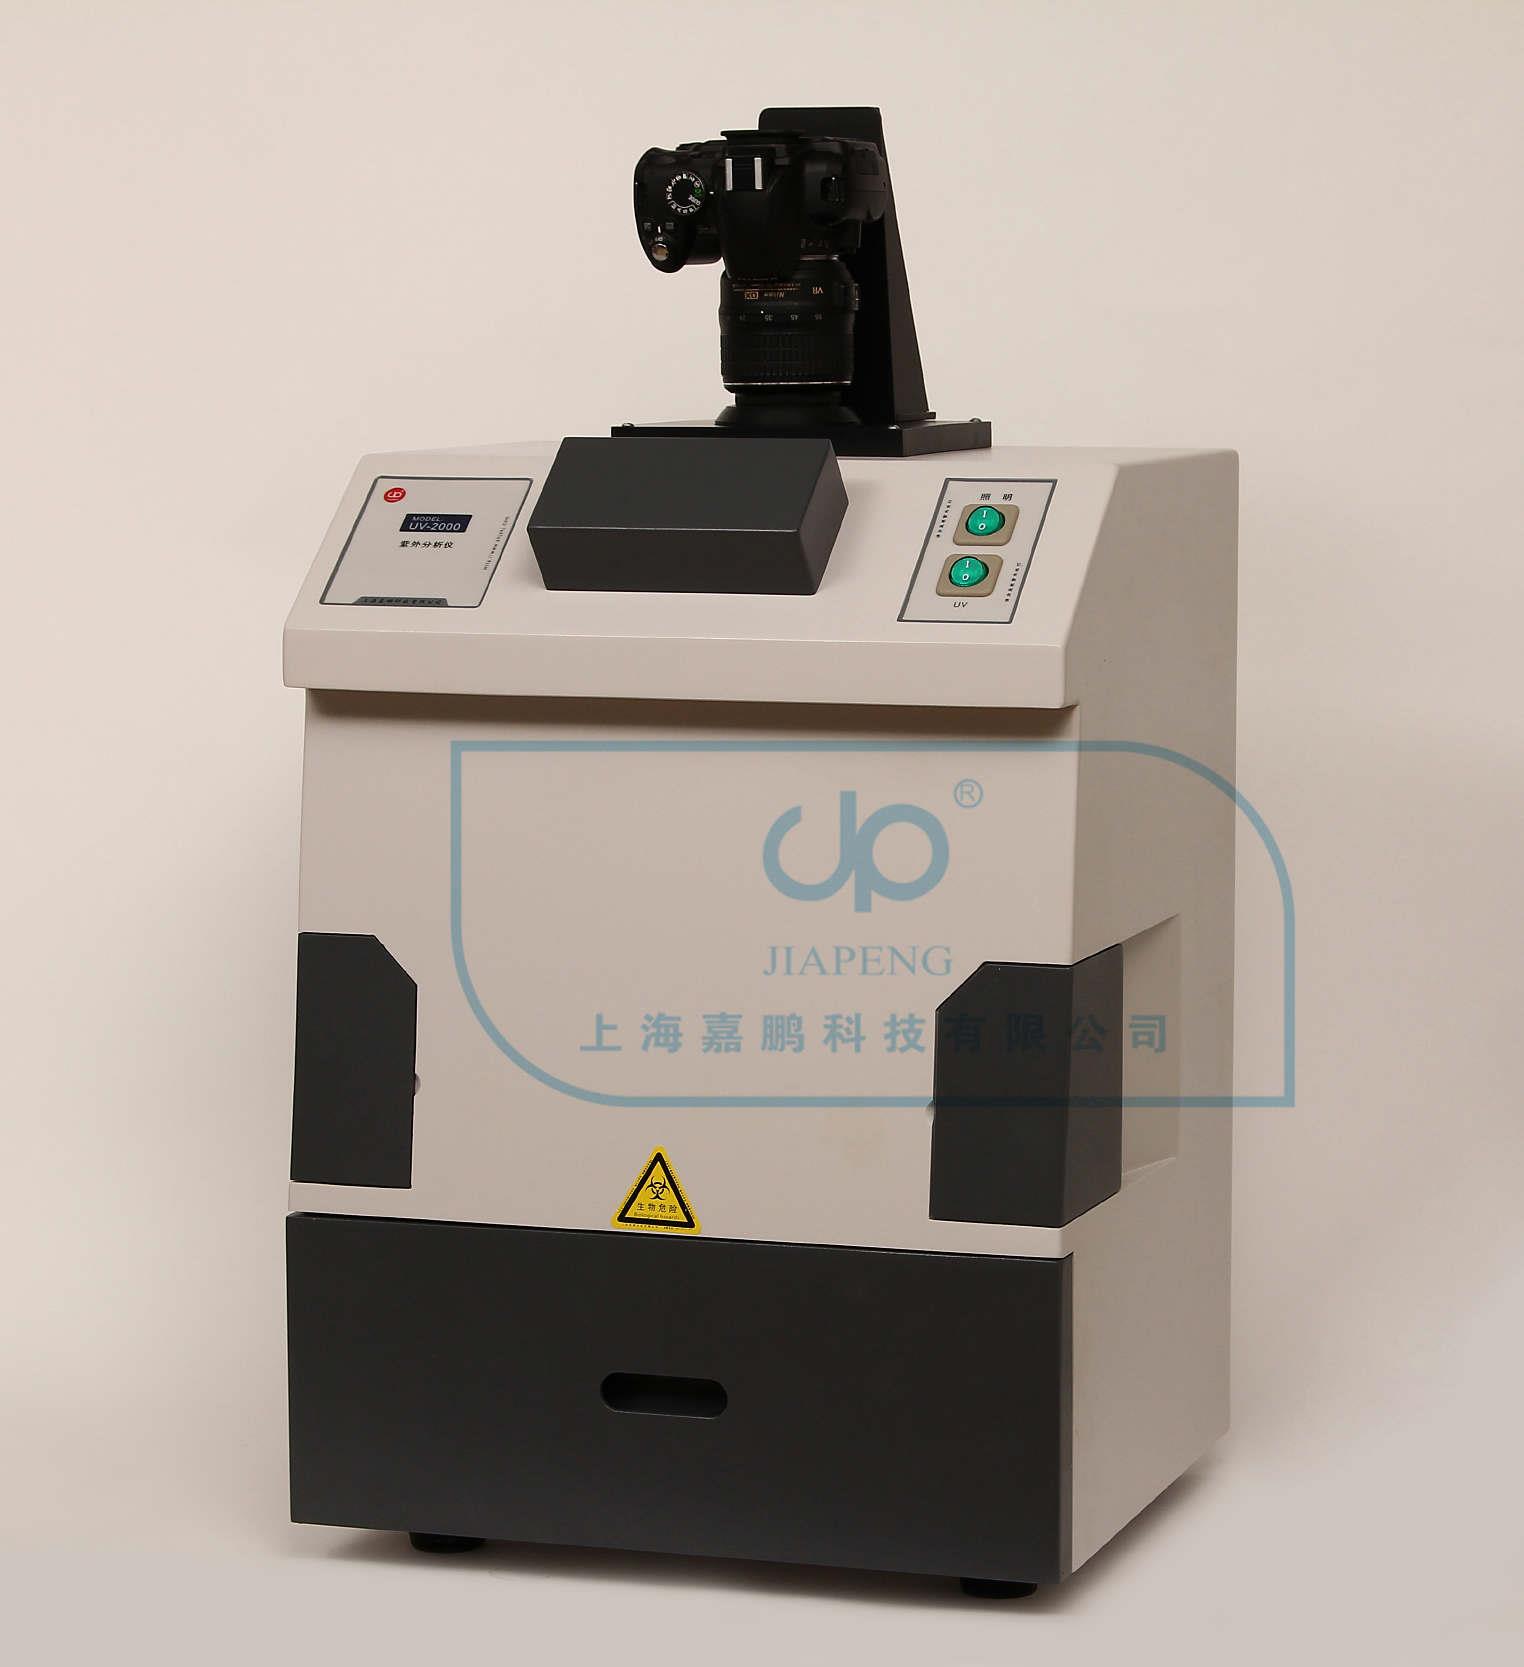 上海嘉鹏高强度紫外分析仪UV-2000